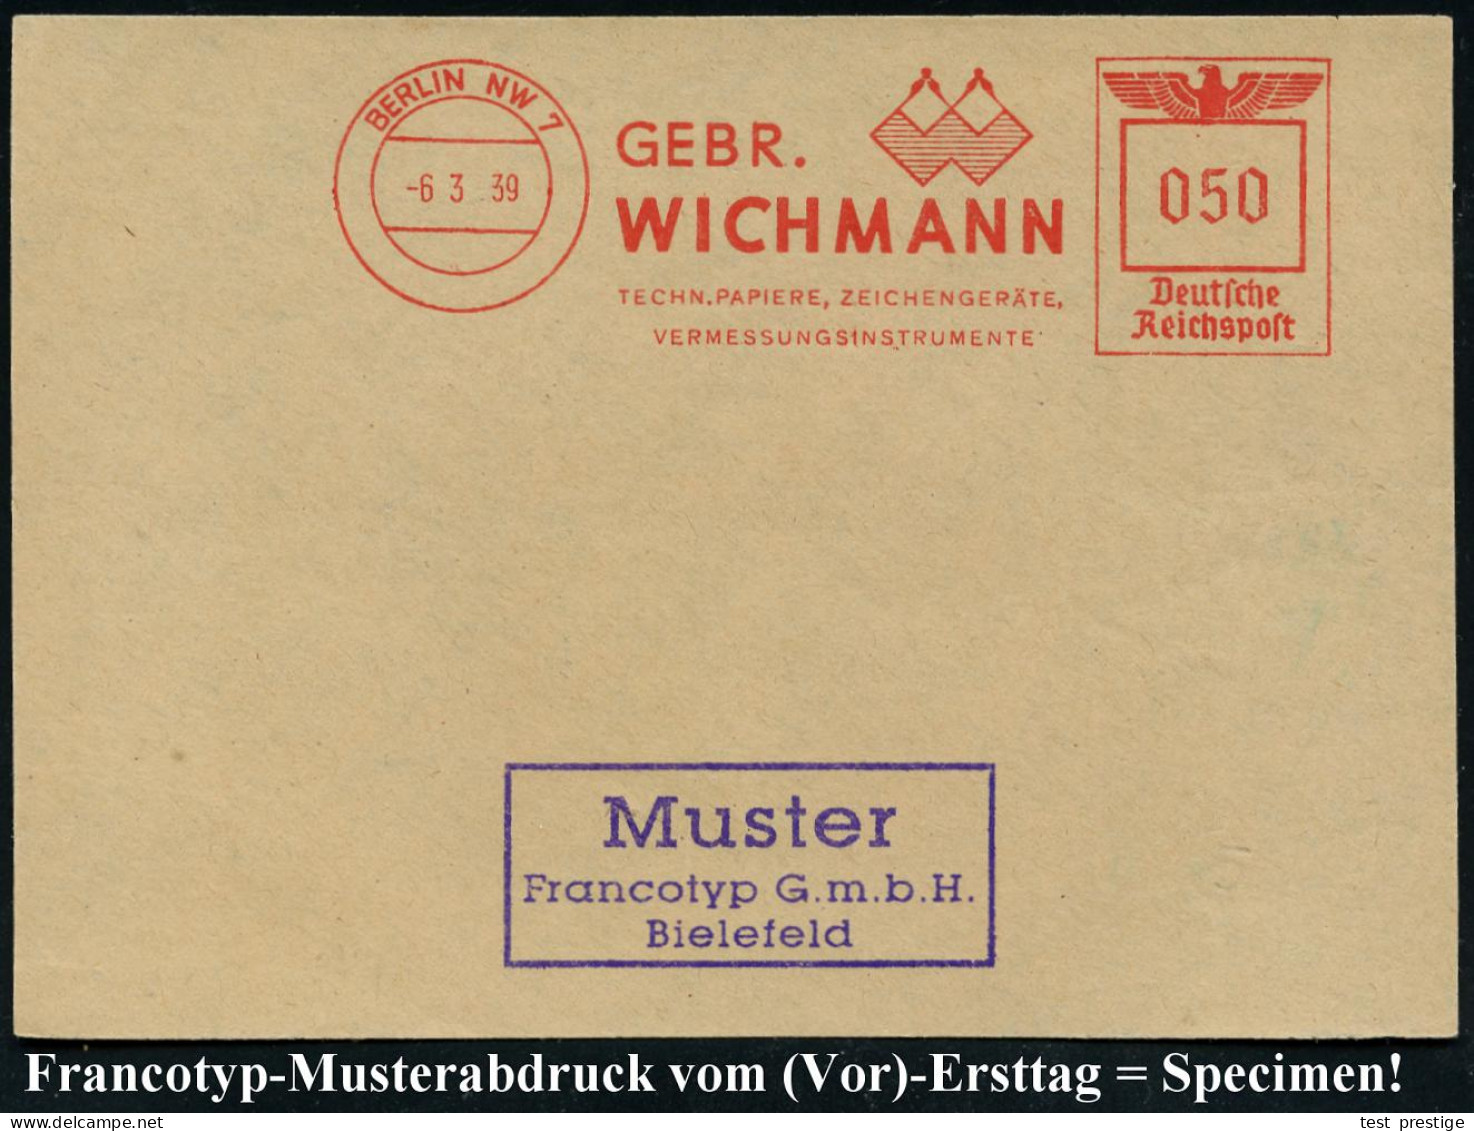 BERLIN NW7/ GEBR./ WICHMANN/ TECHN.PAPIERE, ZEICHENGERÄTE/ VERMESSUNGSINSTRUMENTE 1939 (6.3.) AFS-Musterabdruck Francoty - Geografía